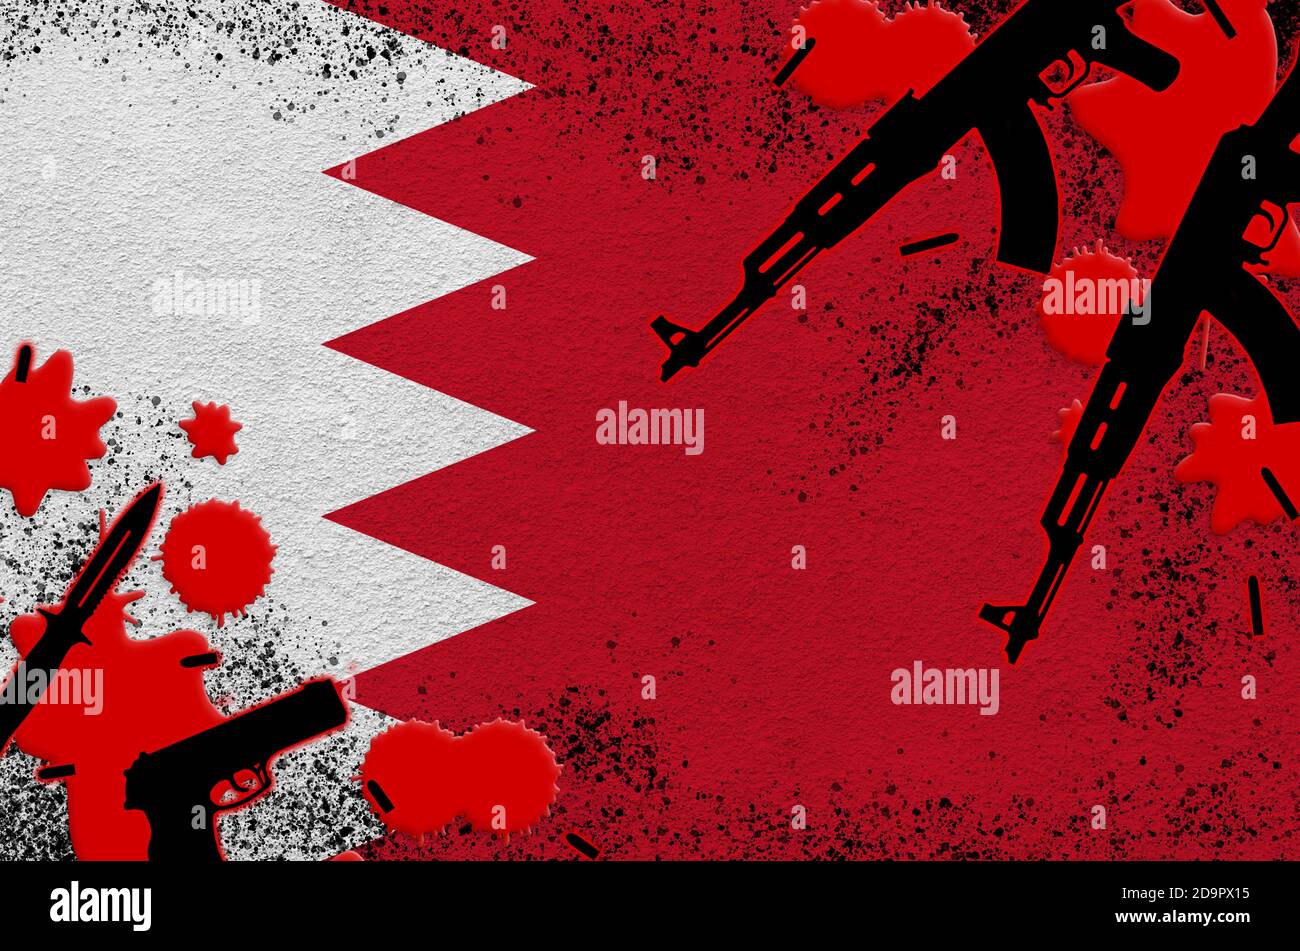 Le drapeau de Bahreïn et les armes à feu dans le sang rouge. Concept d'attaque terroriste et d'opérations militaires. Trafic d'armes Banque D'Images